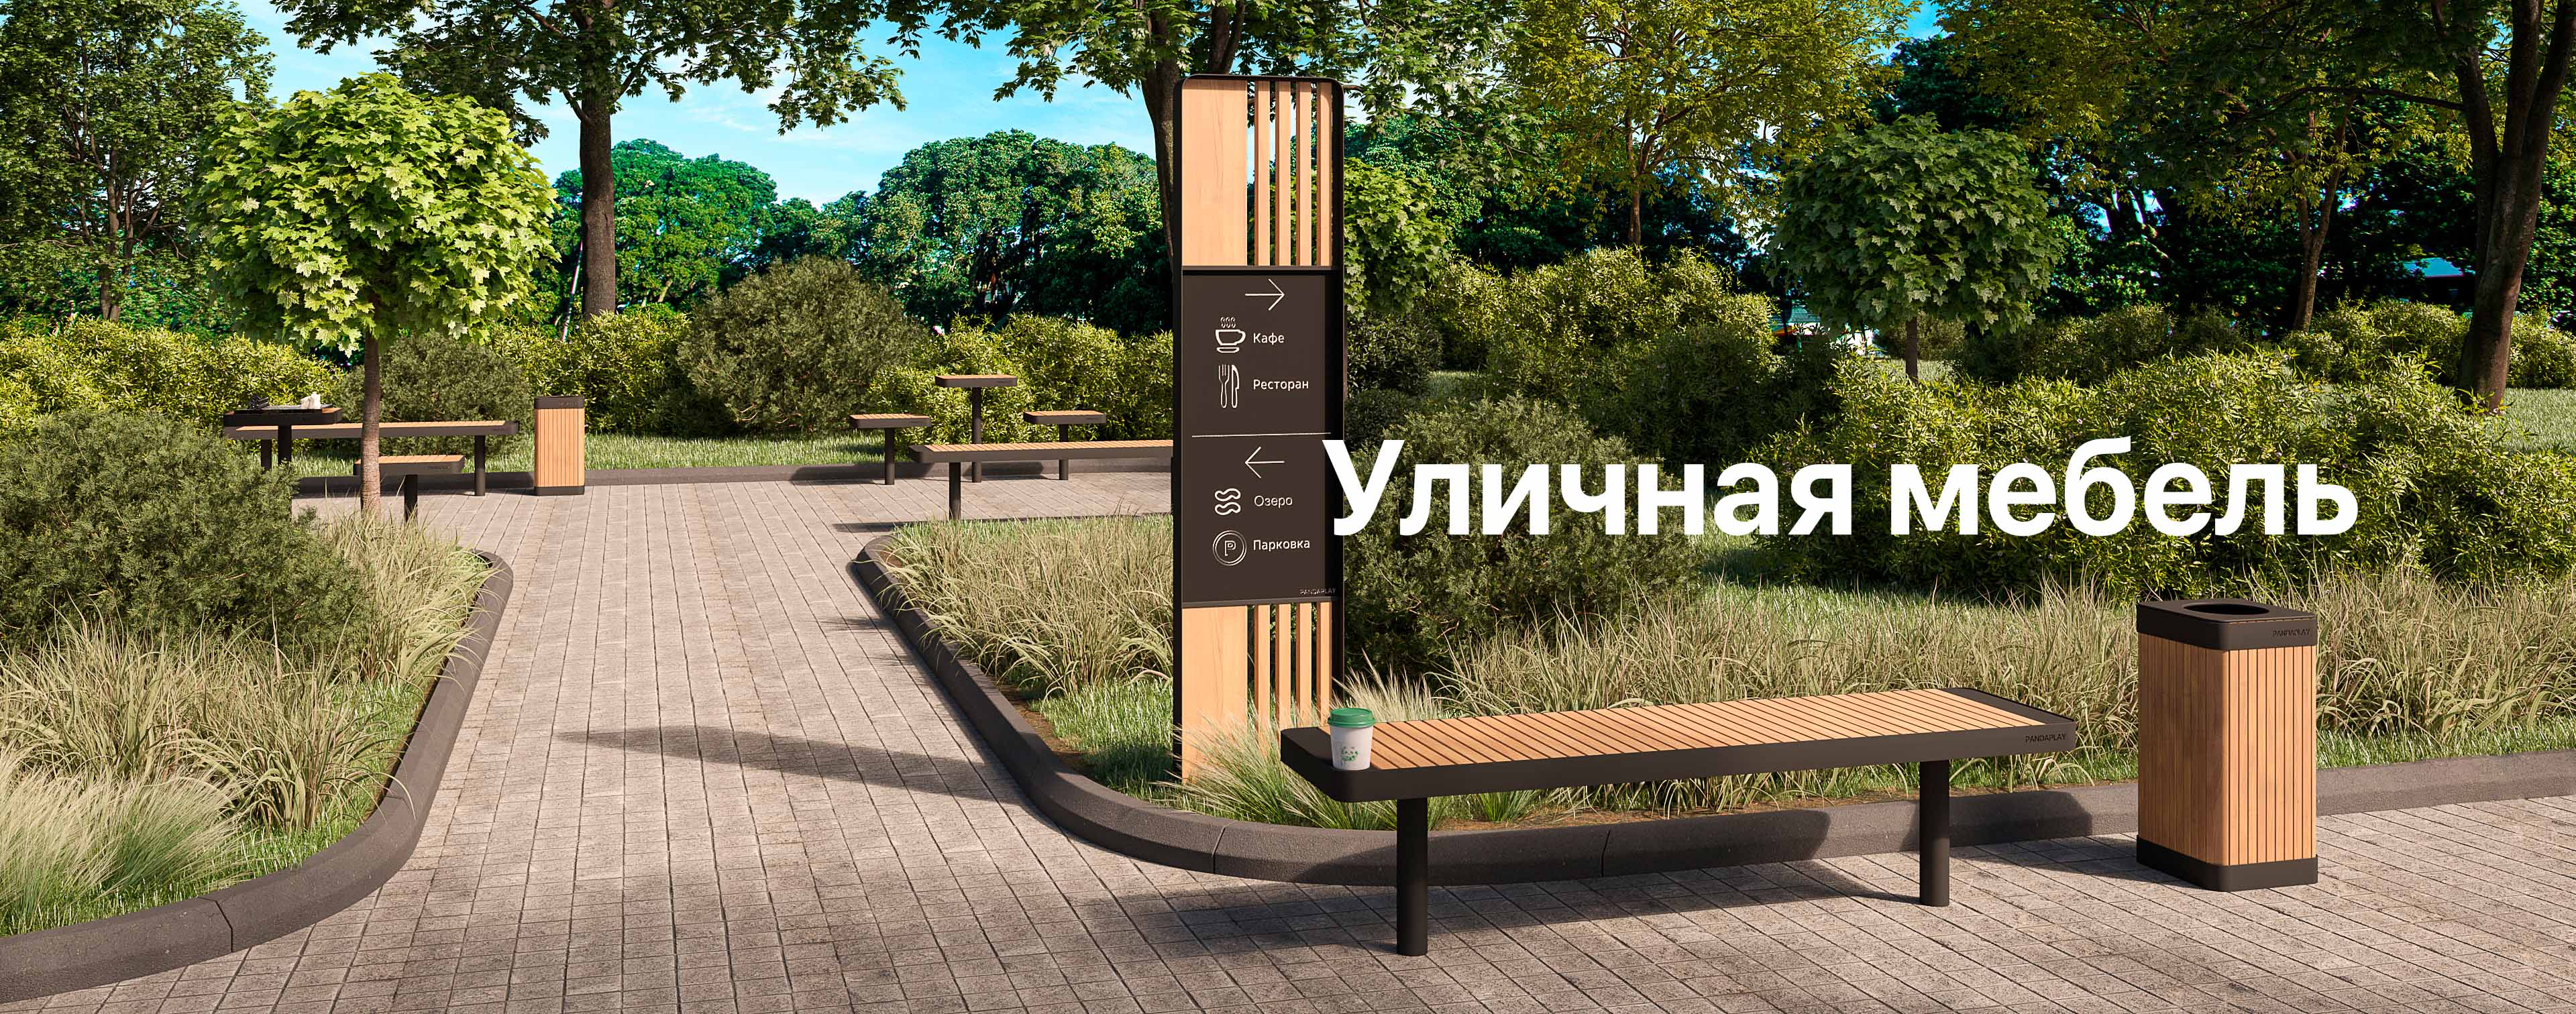 Уличная мебель в Казани